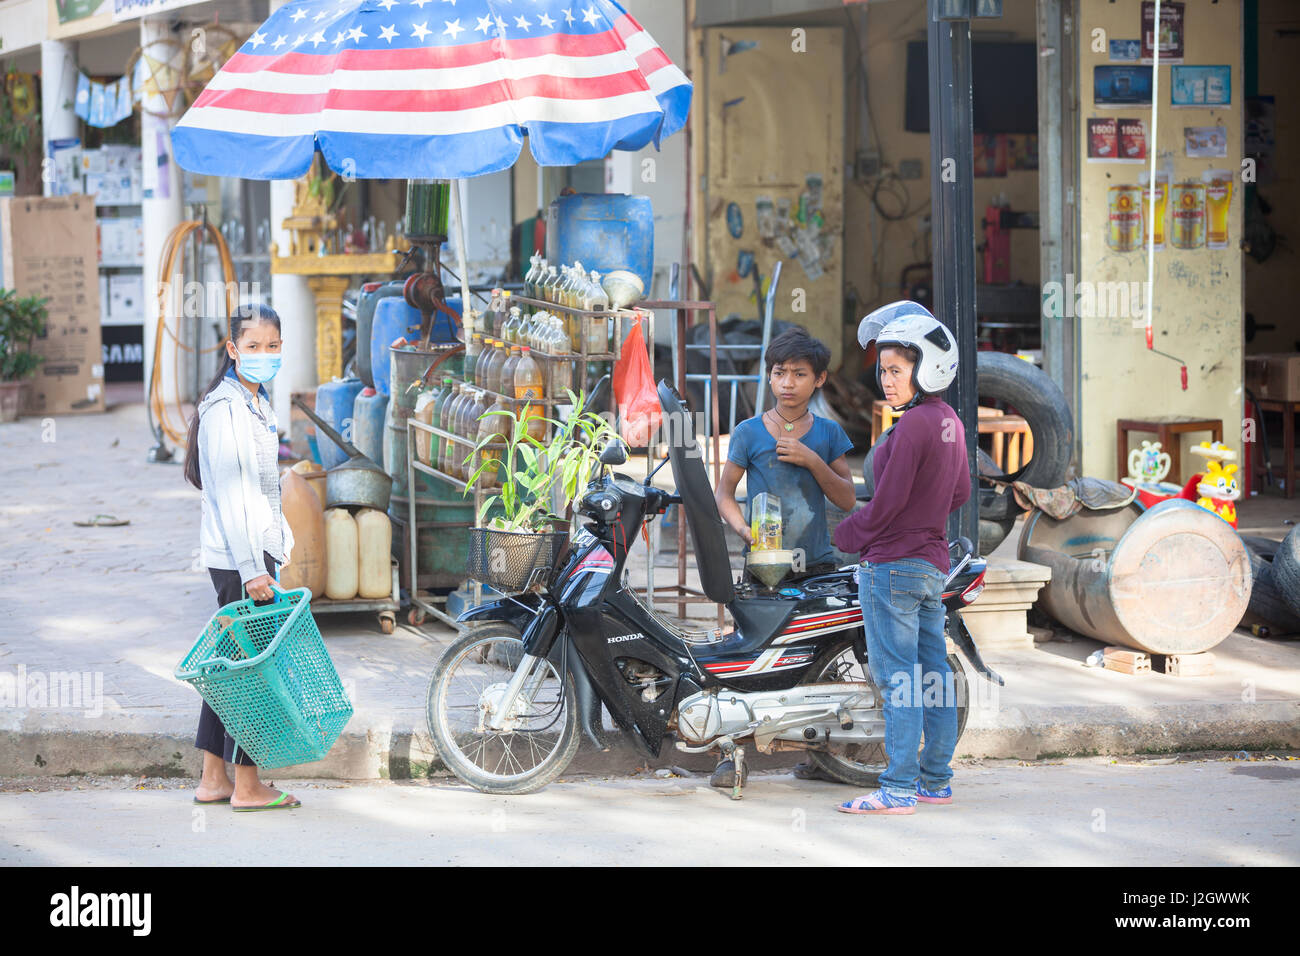 SIEM REAP, Kambodscha - Juli 6: Junge Frau Motorrad aus der Flasche auf traditionellen asiatischen Tankstelle tanken, am 6. Juli 2014 in Siam Reap, Kambodscha. Stockfoto